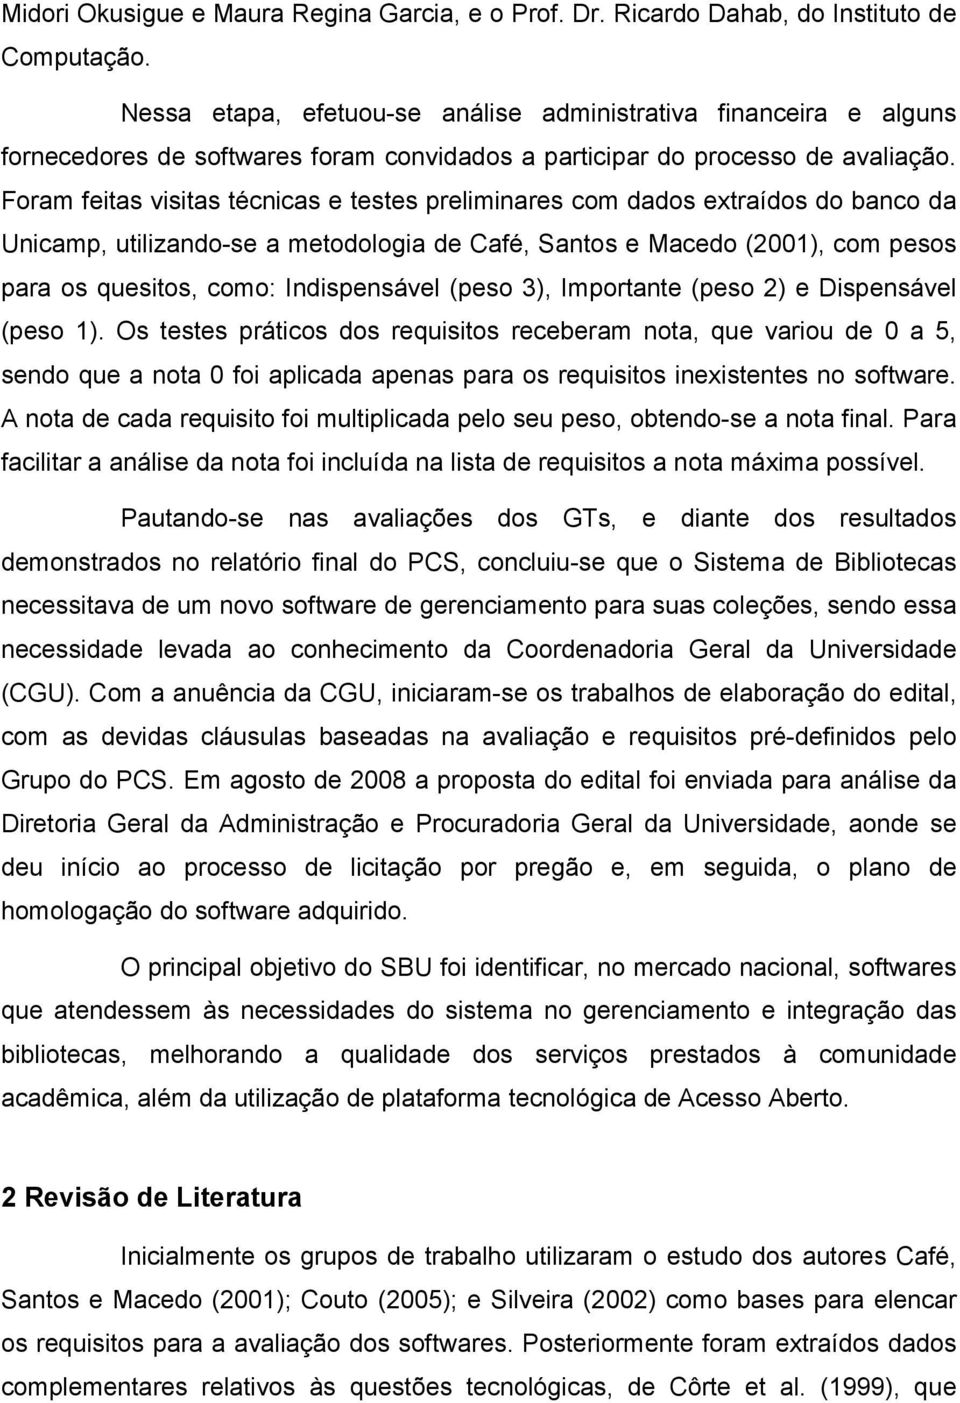 Foram feitas visitas técnicas e testes preliminares com dados extraídos do banco da Unicamp, utilizando-se a metodologia de Café, Santos e Macedo (2001), com pesos para os quesitos, como: